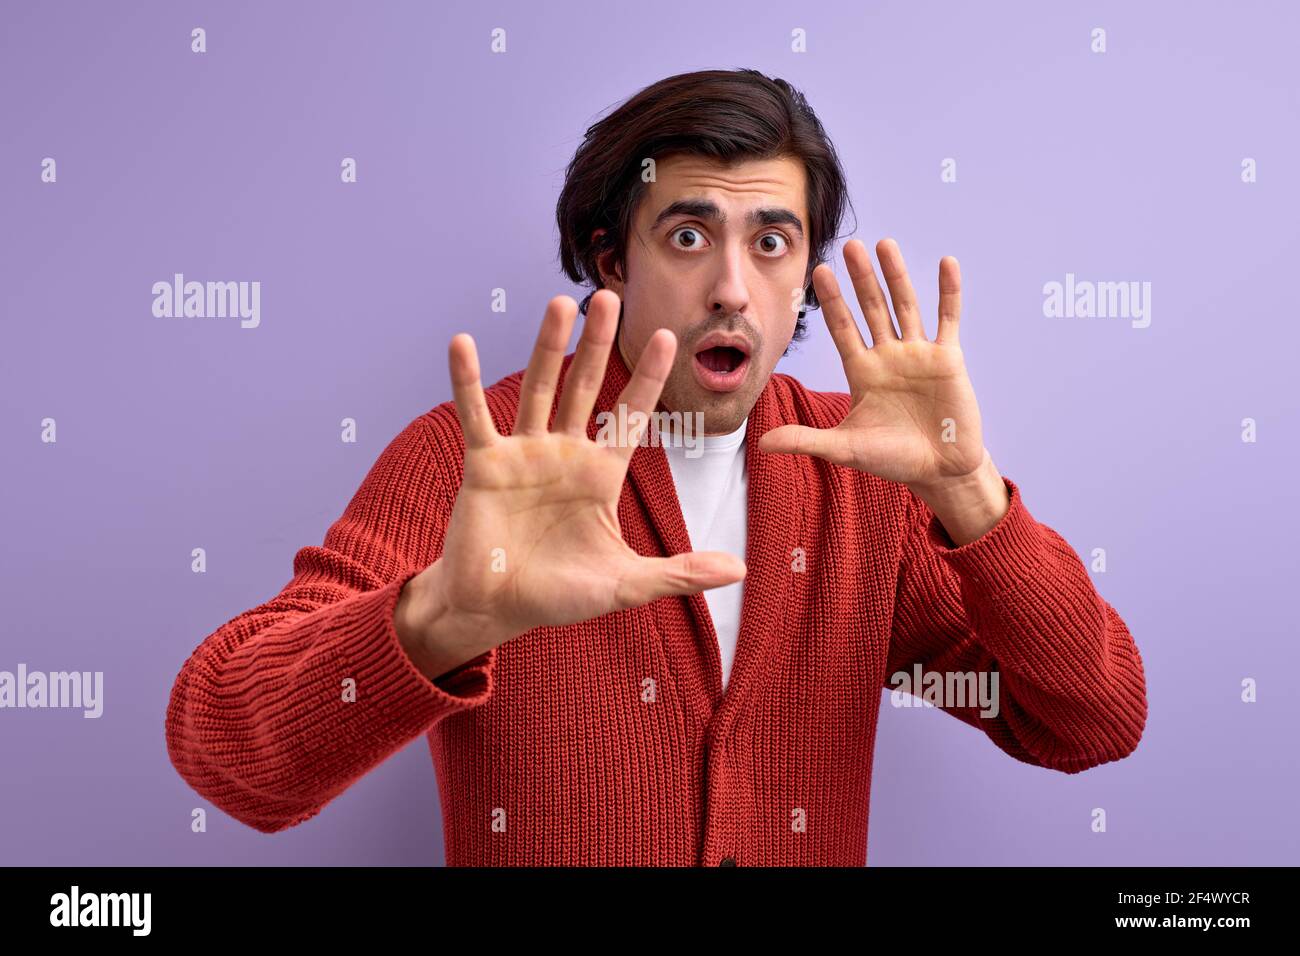 Paura giovane uomo in difesa atteggiamento gesturing stop con le mani, isolato su sfondo viola, dire no, shwoing palmo a macchina fotografica, spaventato e spaventato Foto Stock